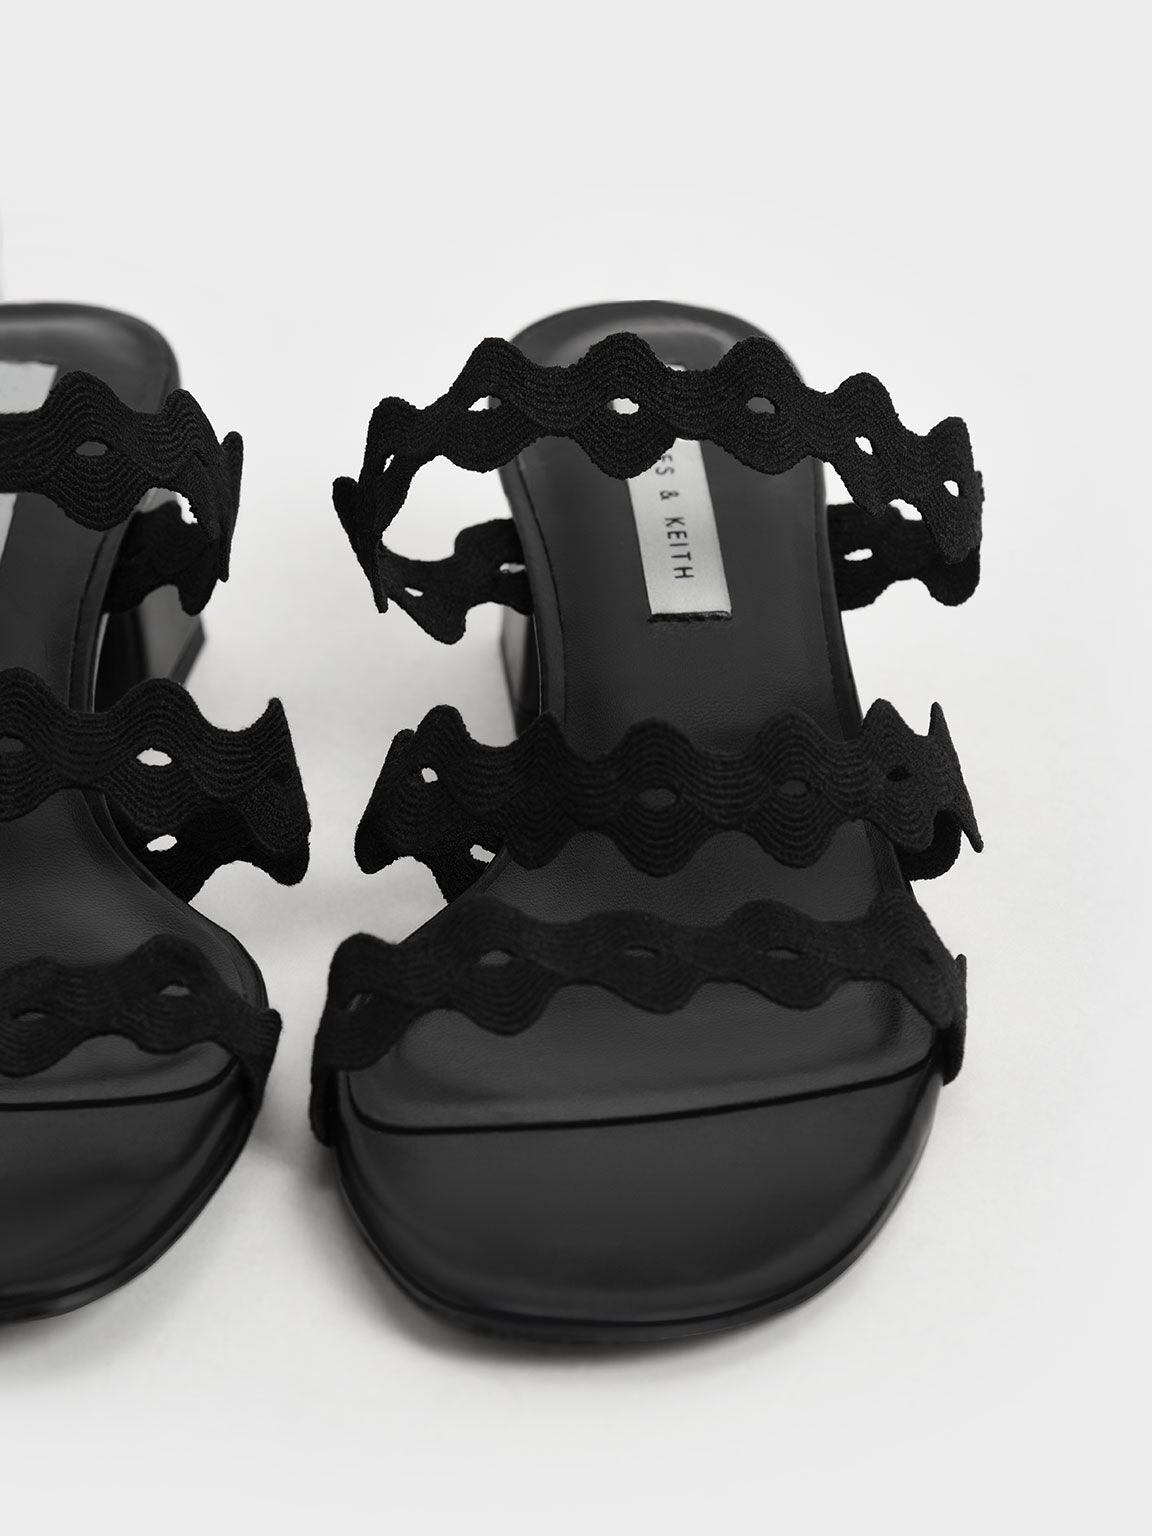 حذاء ميول من النسيج المضلع بأشرطة متعرجة صدفية الشكل, أسود, hi-res